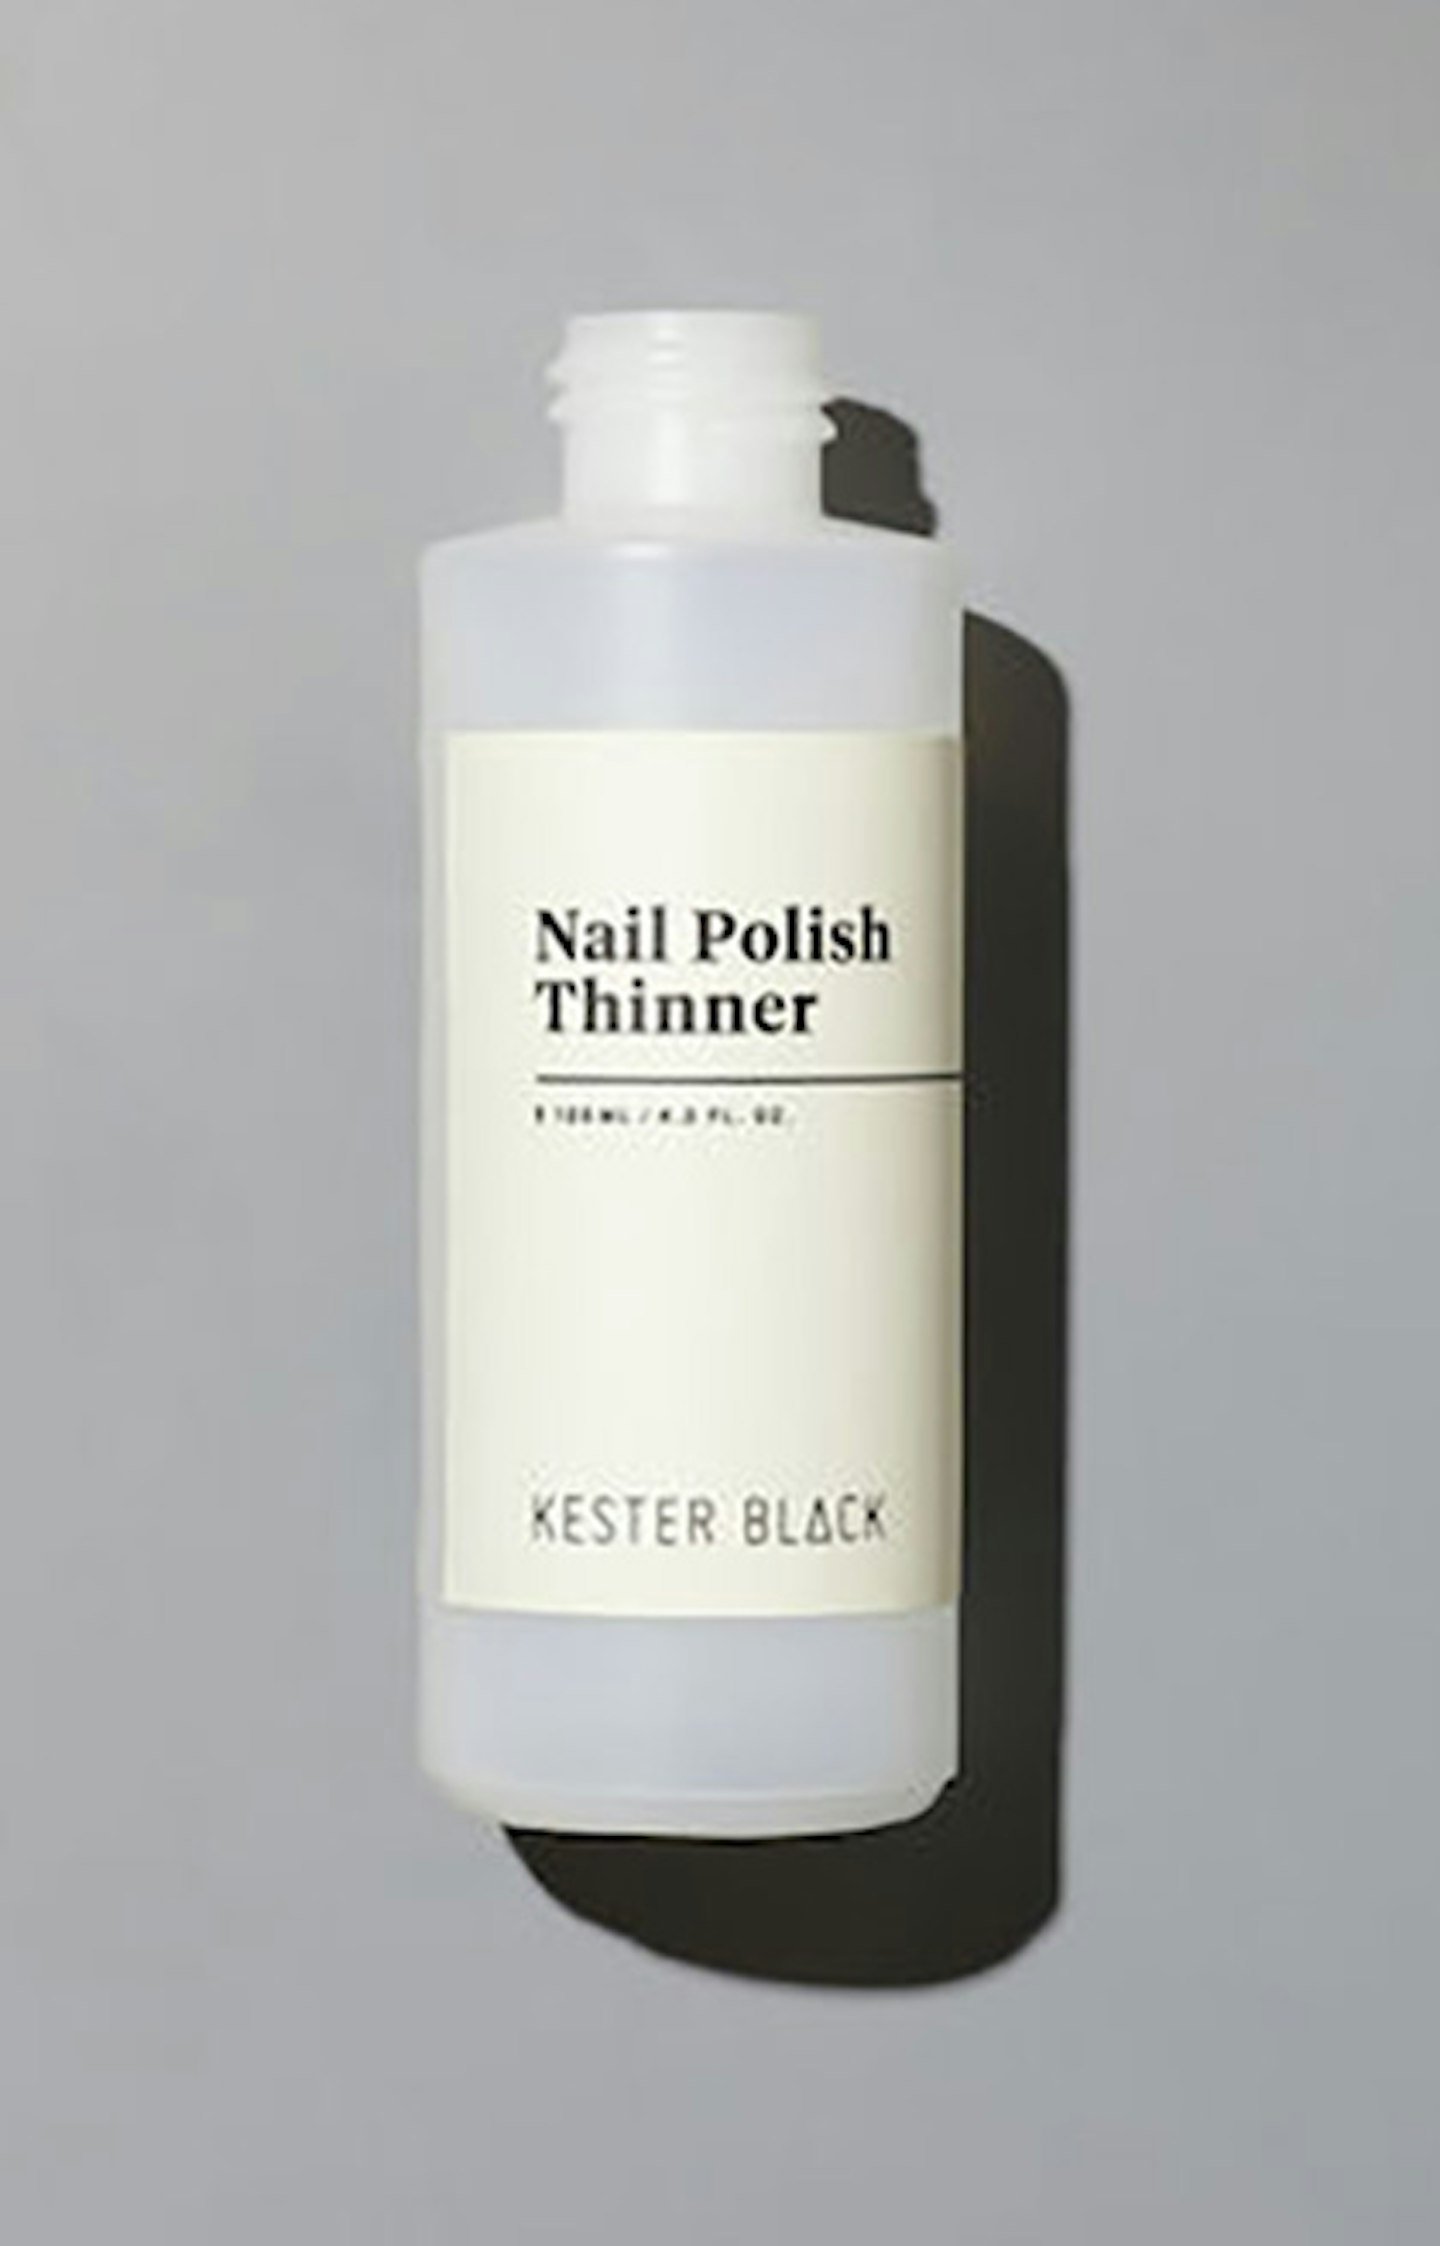 Nail polish thinner